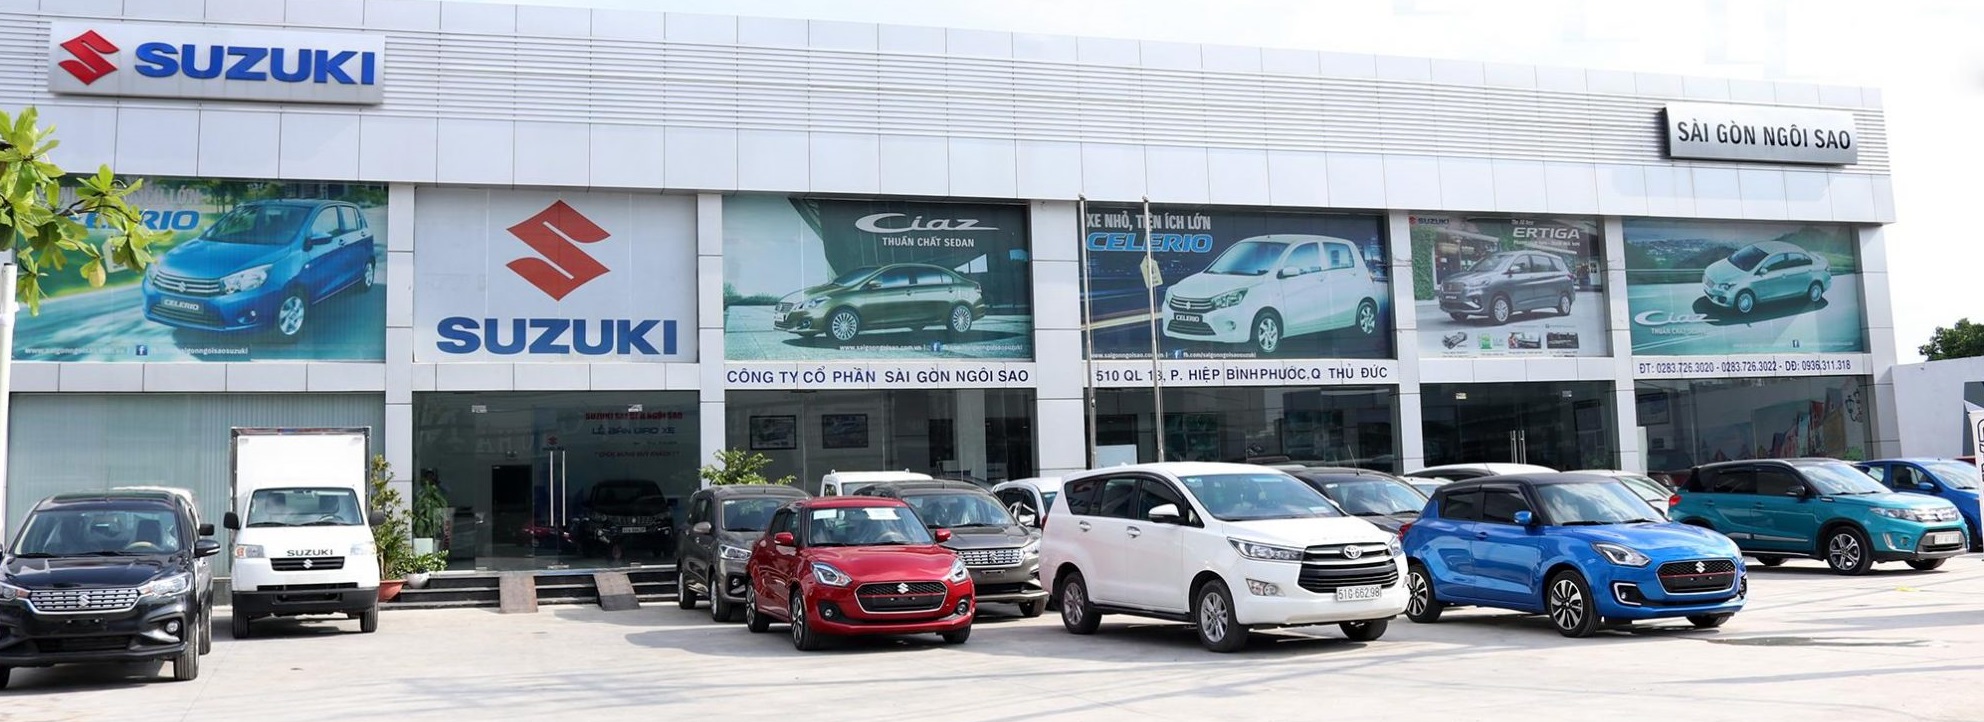 Suzuki XL7 2021: Giá xe lăn bánh & đánh giá thông số kỹ thuật (3/2021)